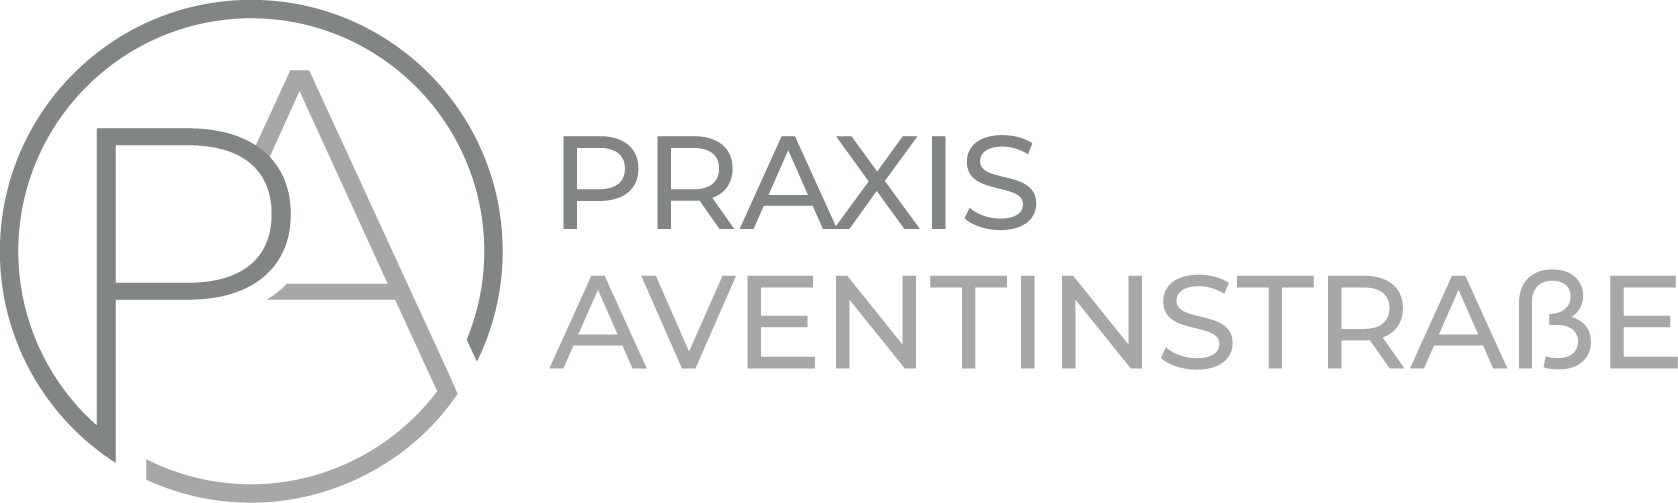 Praxis Aventinstraße | Gemeinschaftspraxis Dr. JC Nest, Dr. J. Nothhaft, M.B. Stoll